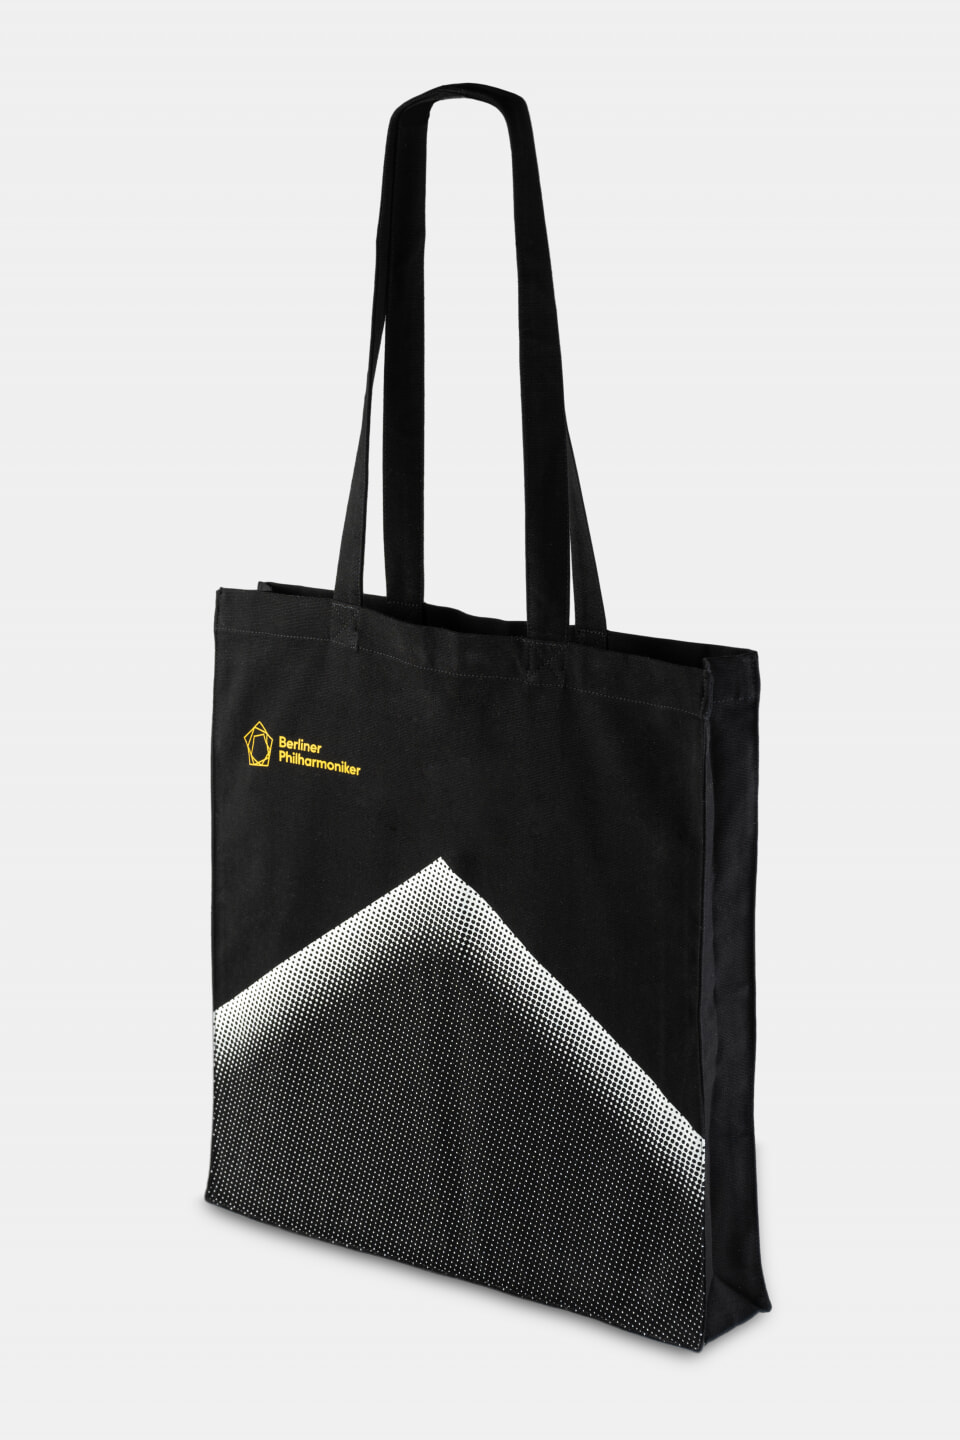 베를린 필하모닉 레이블 제작 토트 백 (Berliner Philharmoniker Tote bag with bottom fold)